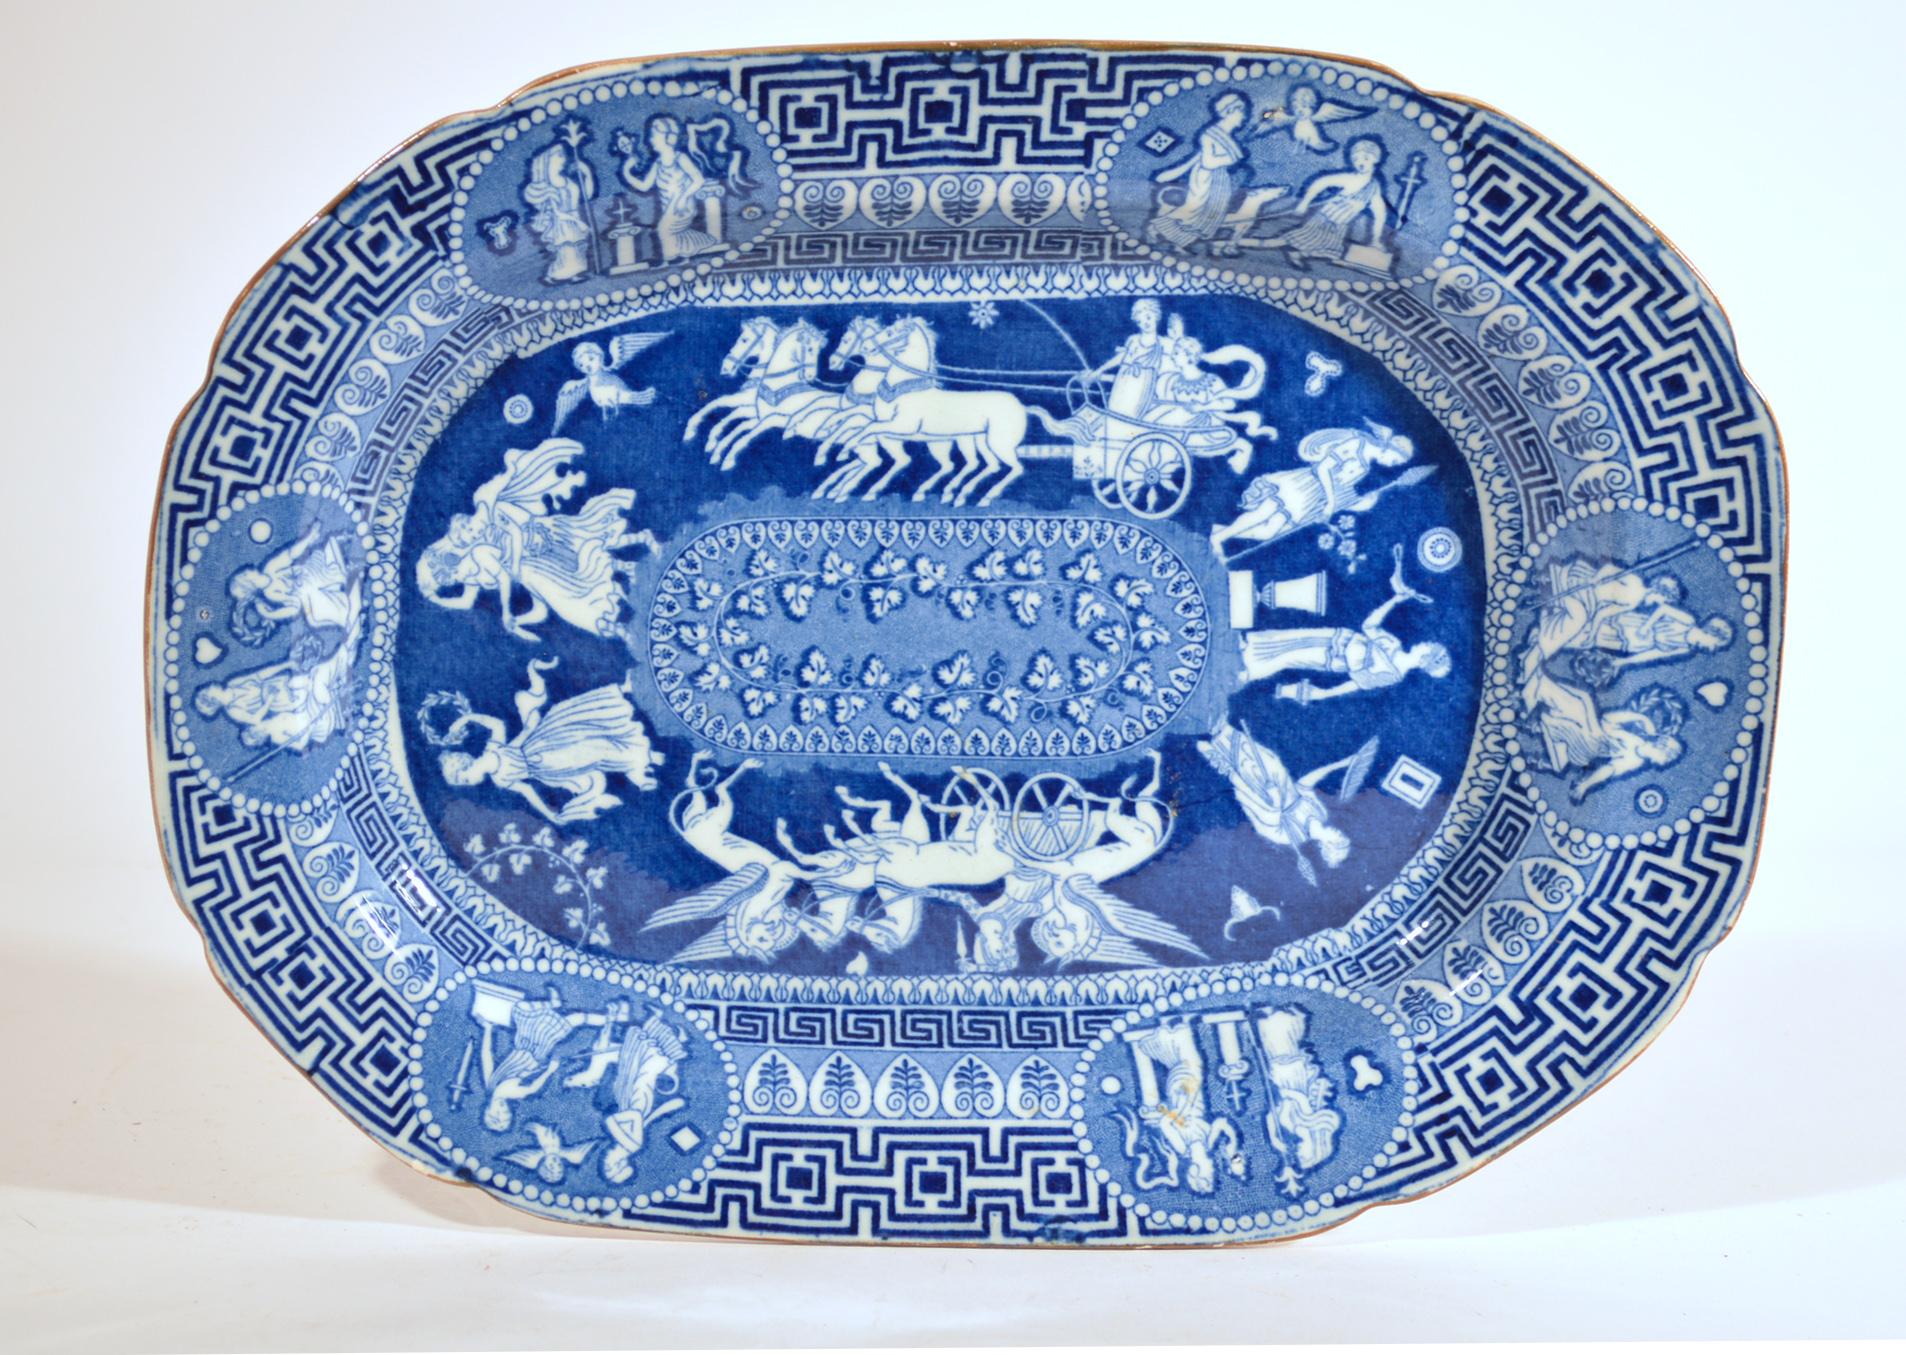 Herculaneum Neo-klassischen griechischen Muster blau gedruckt Gericht,
Anfang des 19. Jahrhunderts.

Das zentrale Muster der unterglasurblauen Keramik aus Herculaneum zeigt eine Reihe von Bildern, die eine ovale Tafel mit einer Blattranke